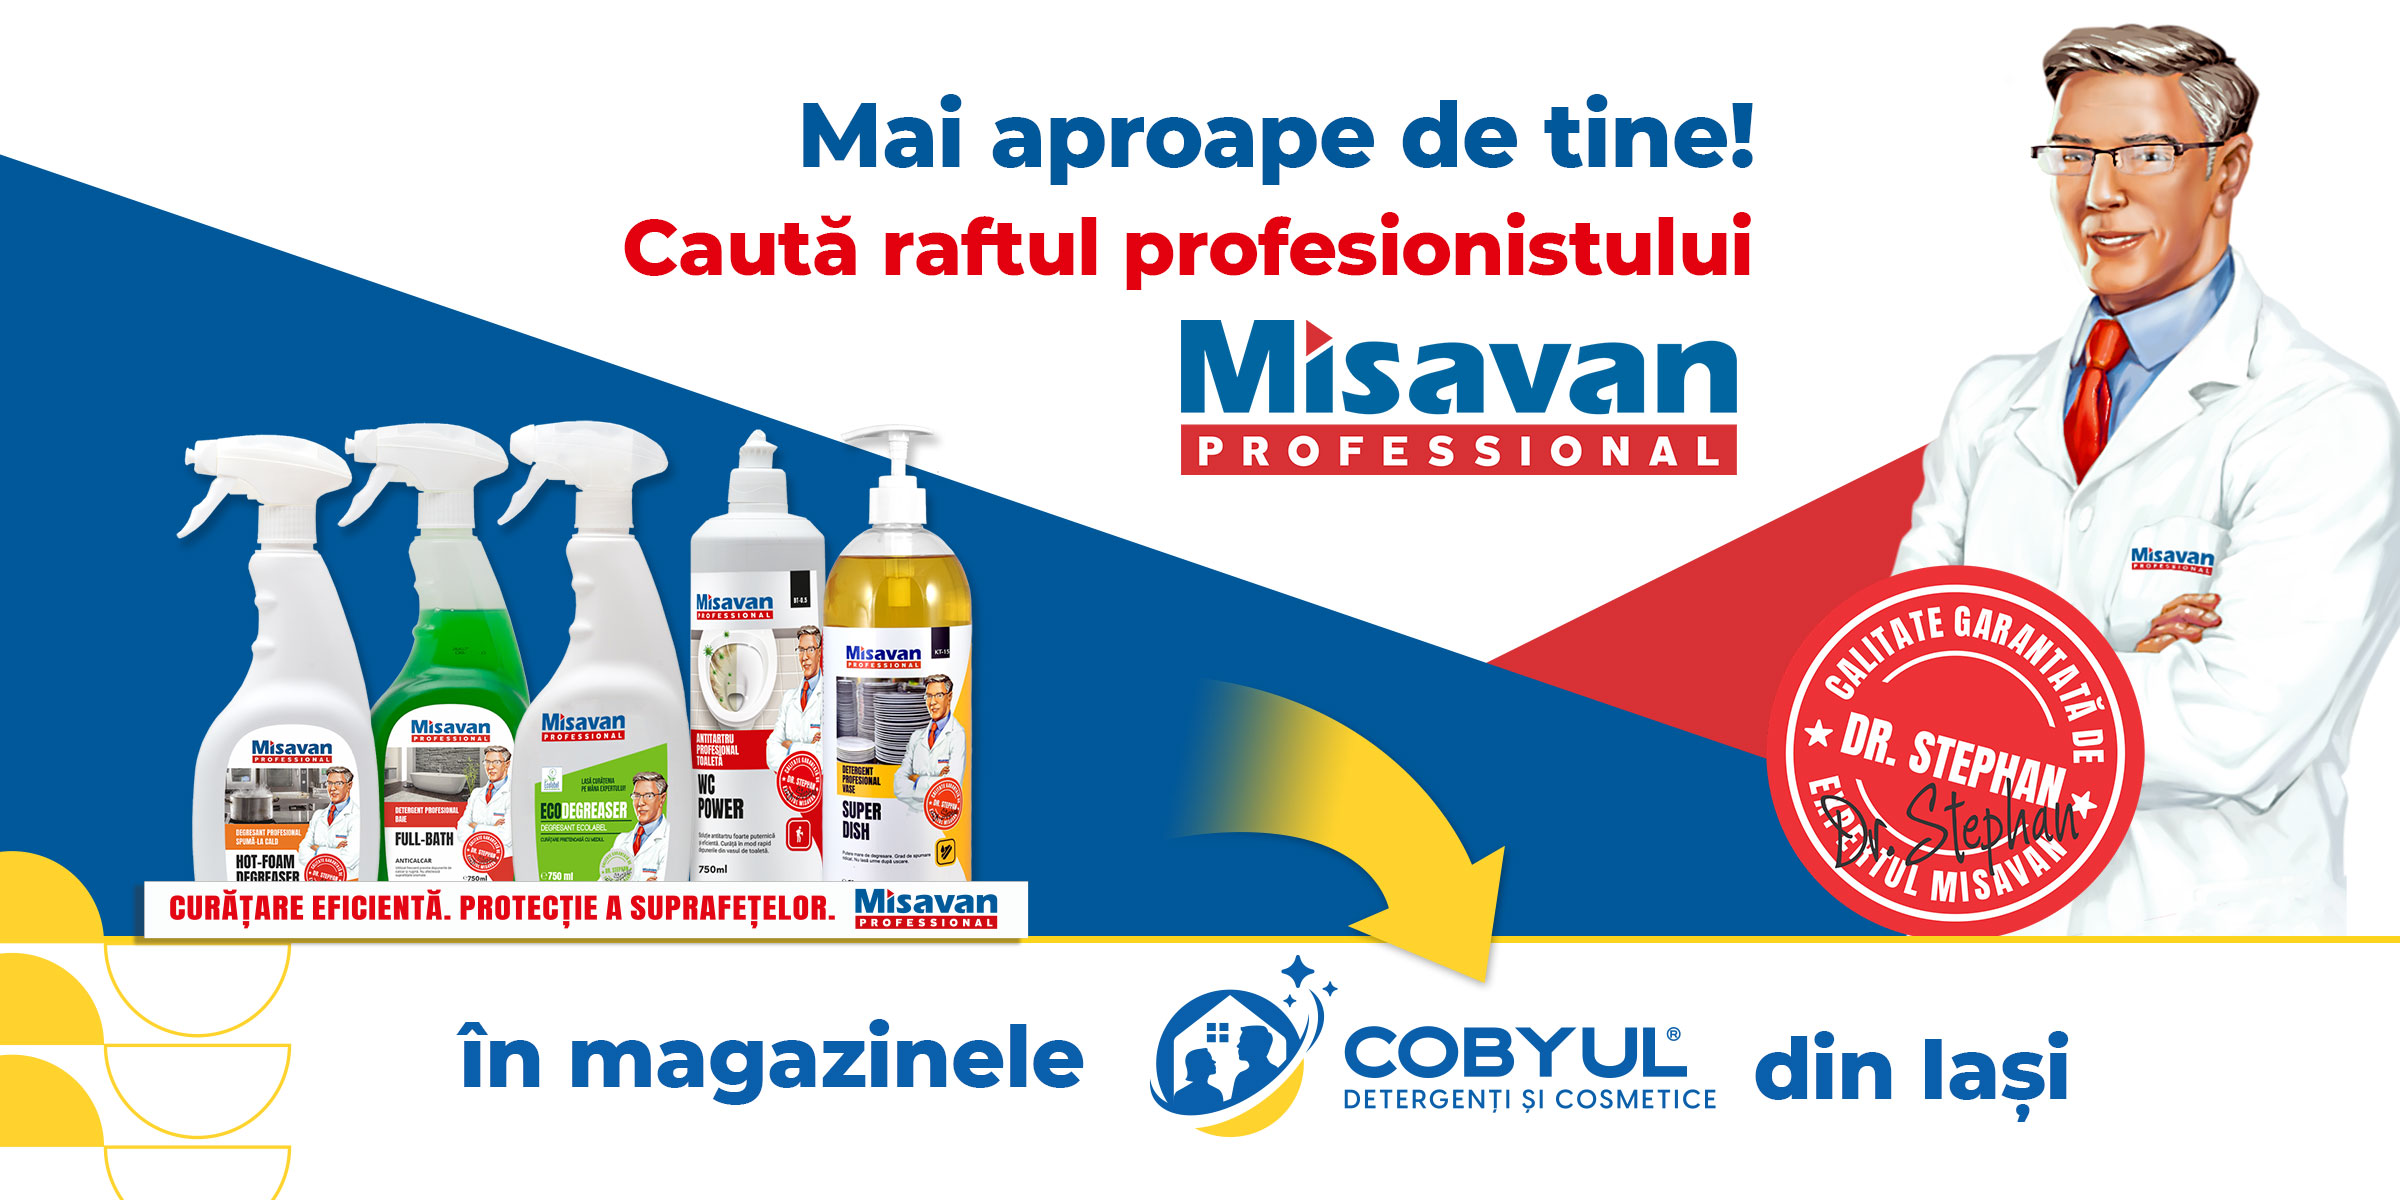 Caută în magazinele Cobyul din Iași, raftul profesionistului Misavan